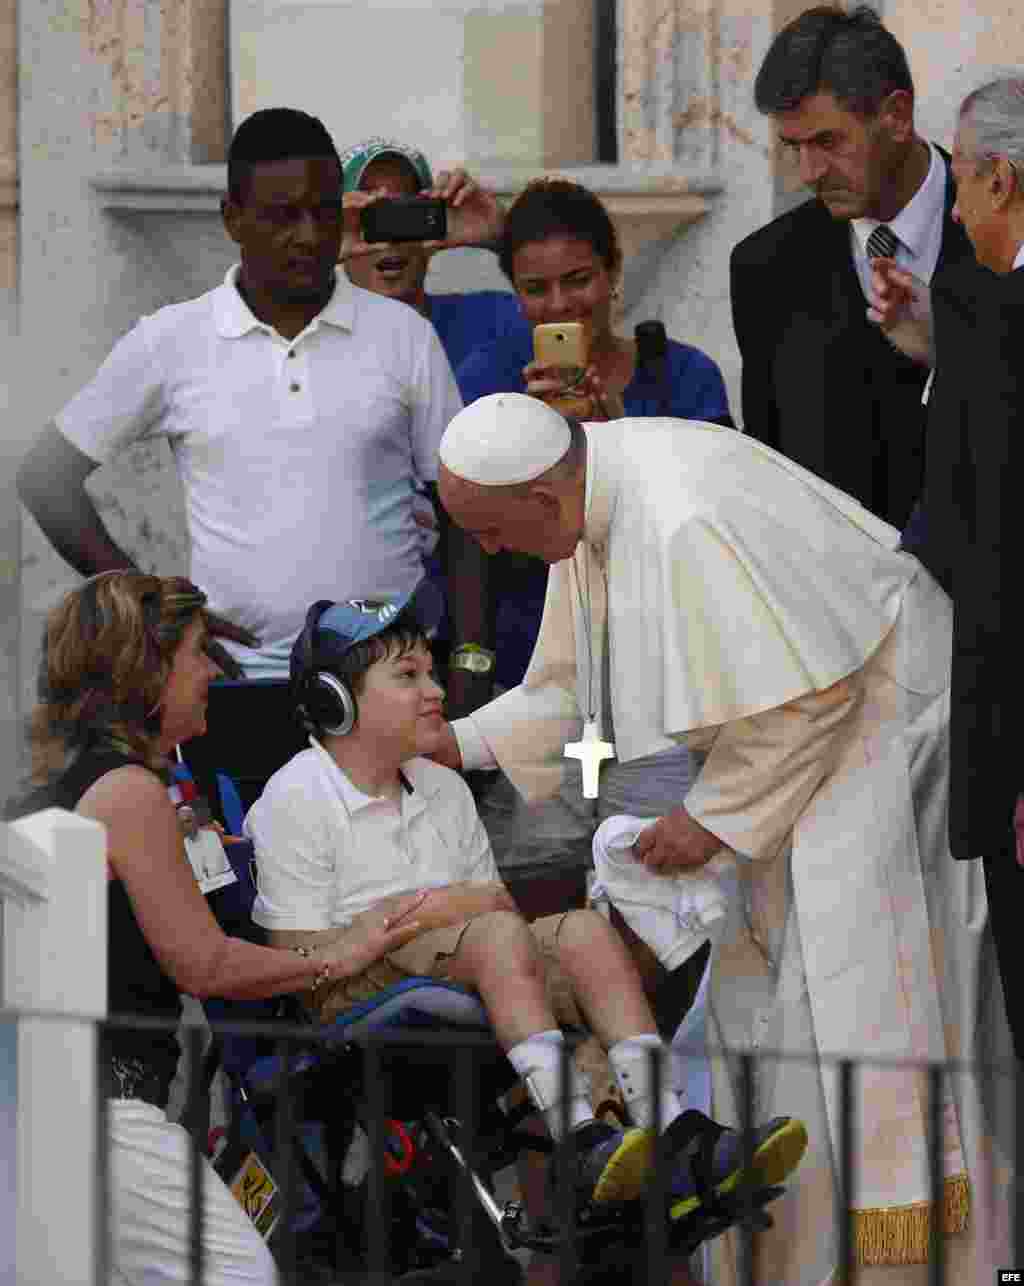  El papa Francisco saluda a un niño discapacitado durante un encuentro con jóvenes hoy, domingo 20 de septiembre de 2015, en el Centro Cultural Padre Félix Varela, en La Habana (Cuba). EFE/Orlando Barría